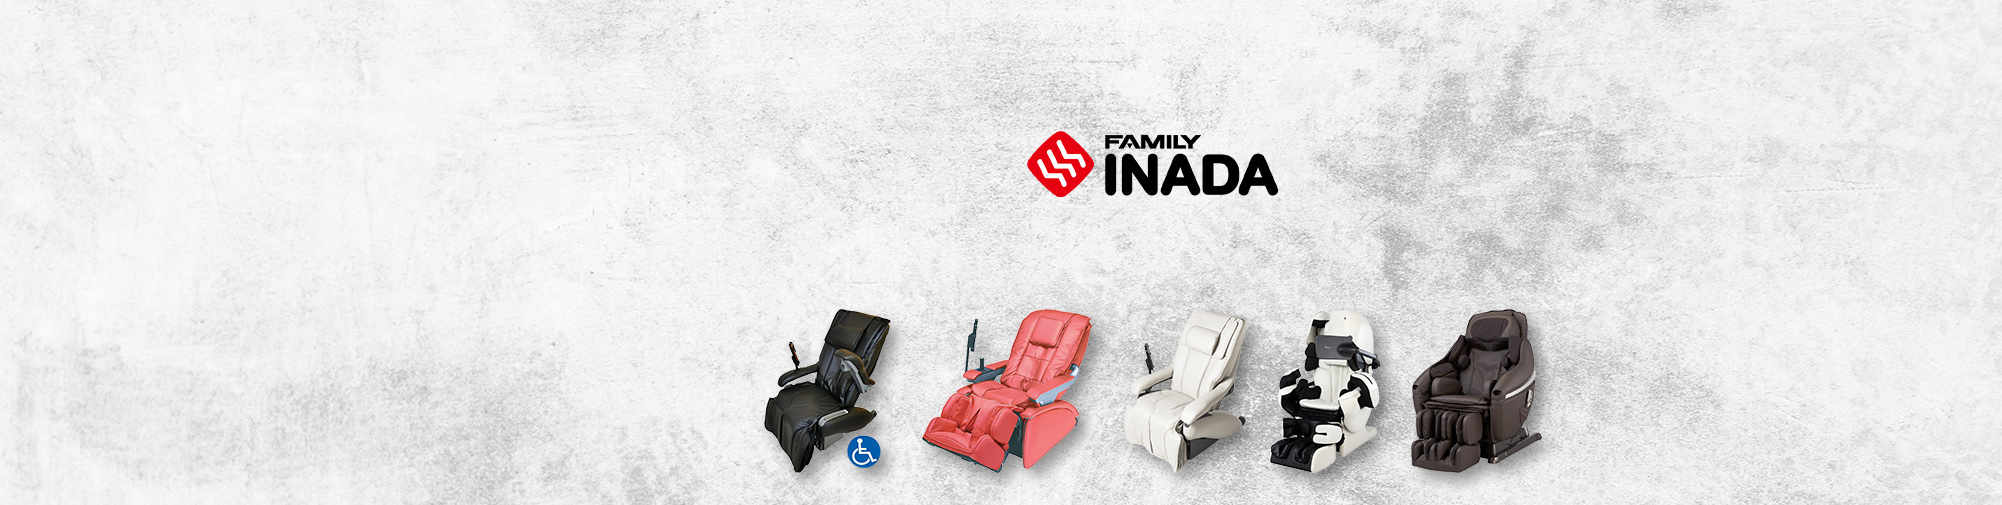 Famiglia Inada - azienda tradizionale giapponese | Mondo delle poltrone da massaggio